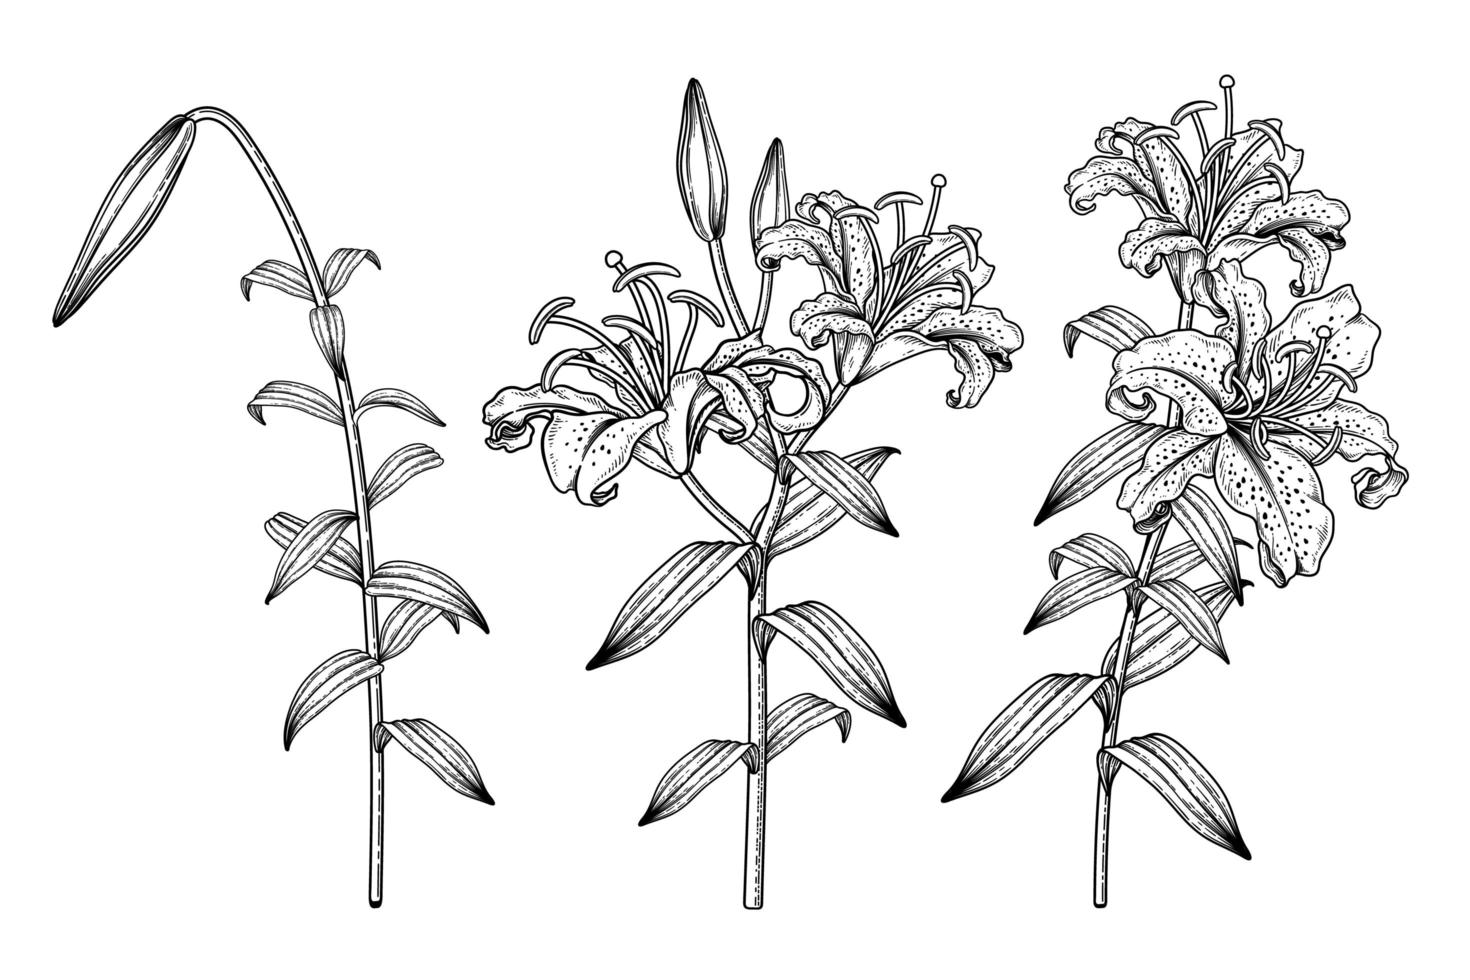 tak van gouden rayed lelie of lilium auratum bloem hand getrokken schets botanische illustraties decoratieve set vector